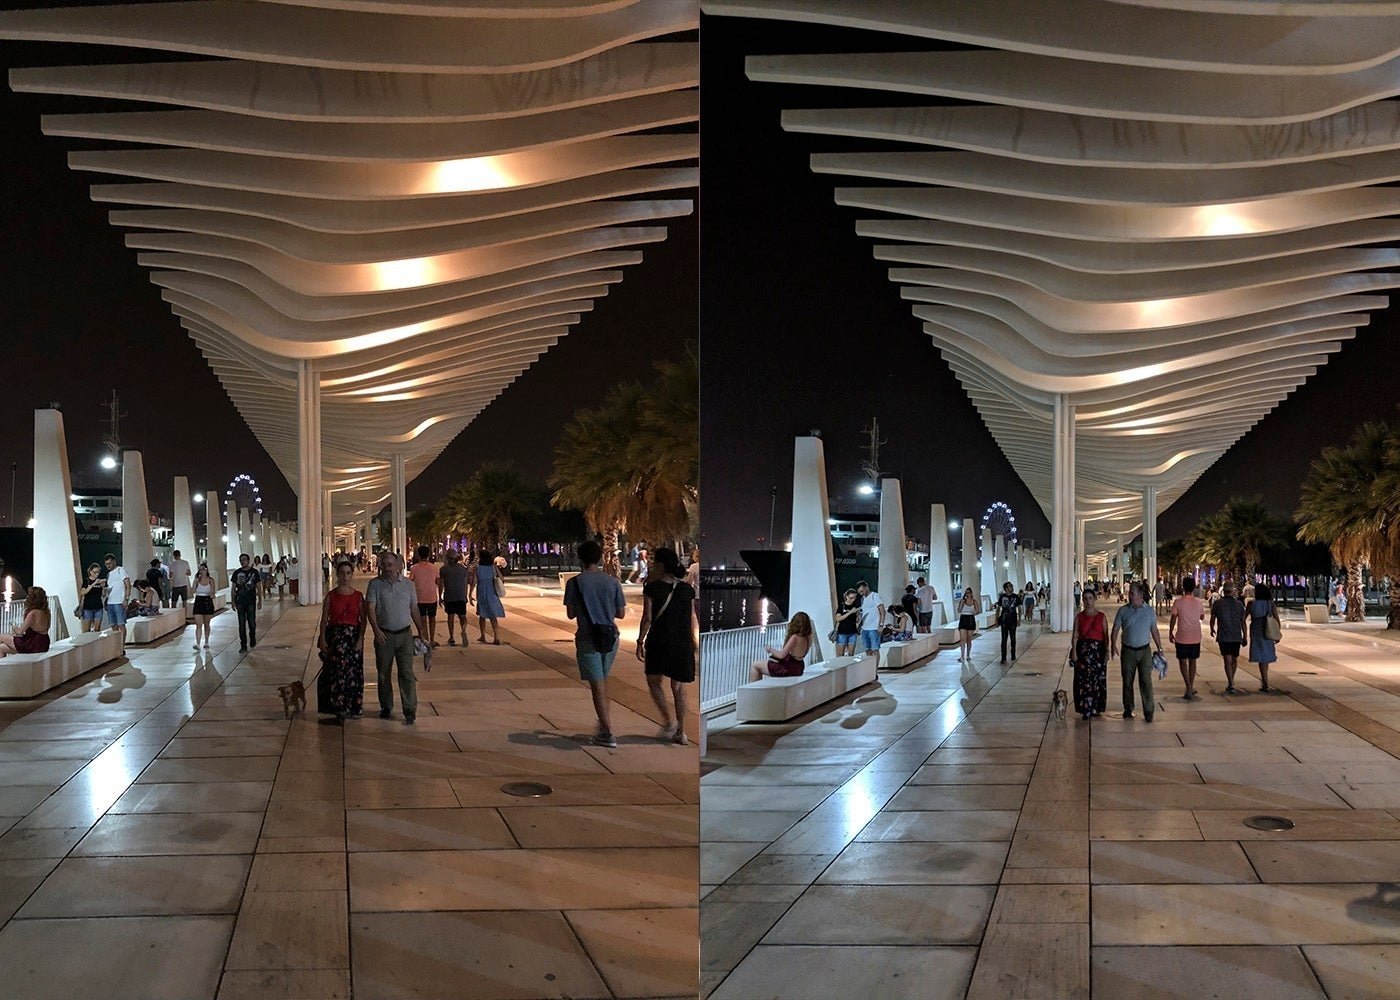 Google Pixel 2 vs iPhone X: comparativa de cámara tras la llegada de iOS 12